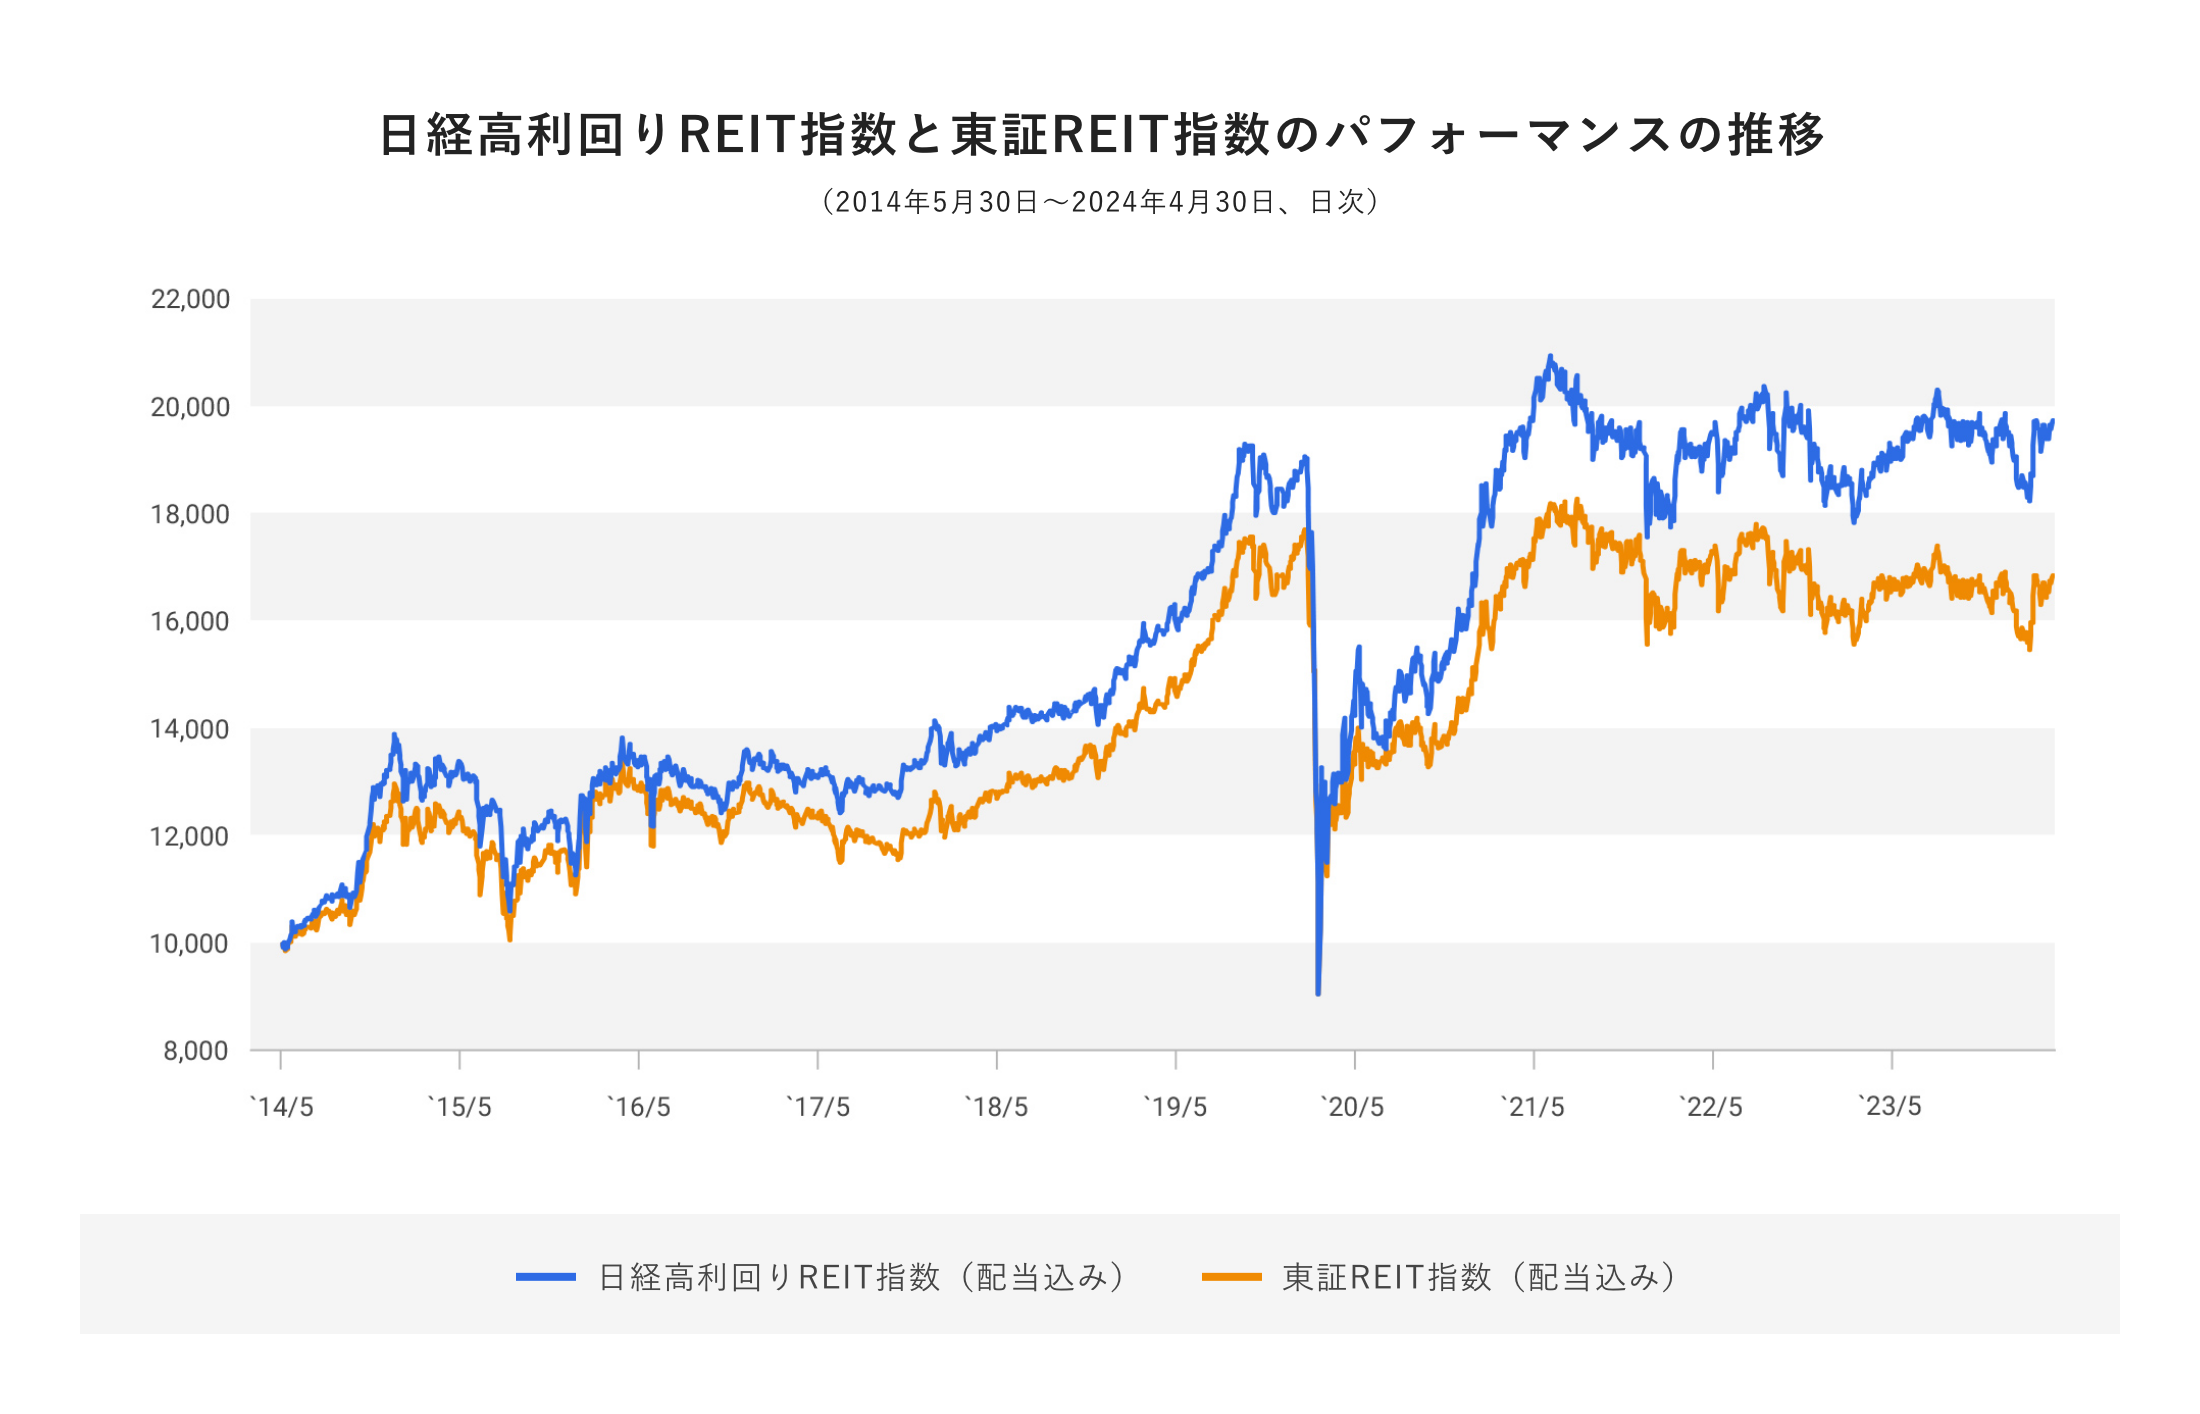 日経高利回りREIT指数と東証REIT指数のパフォーマンスの推移